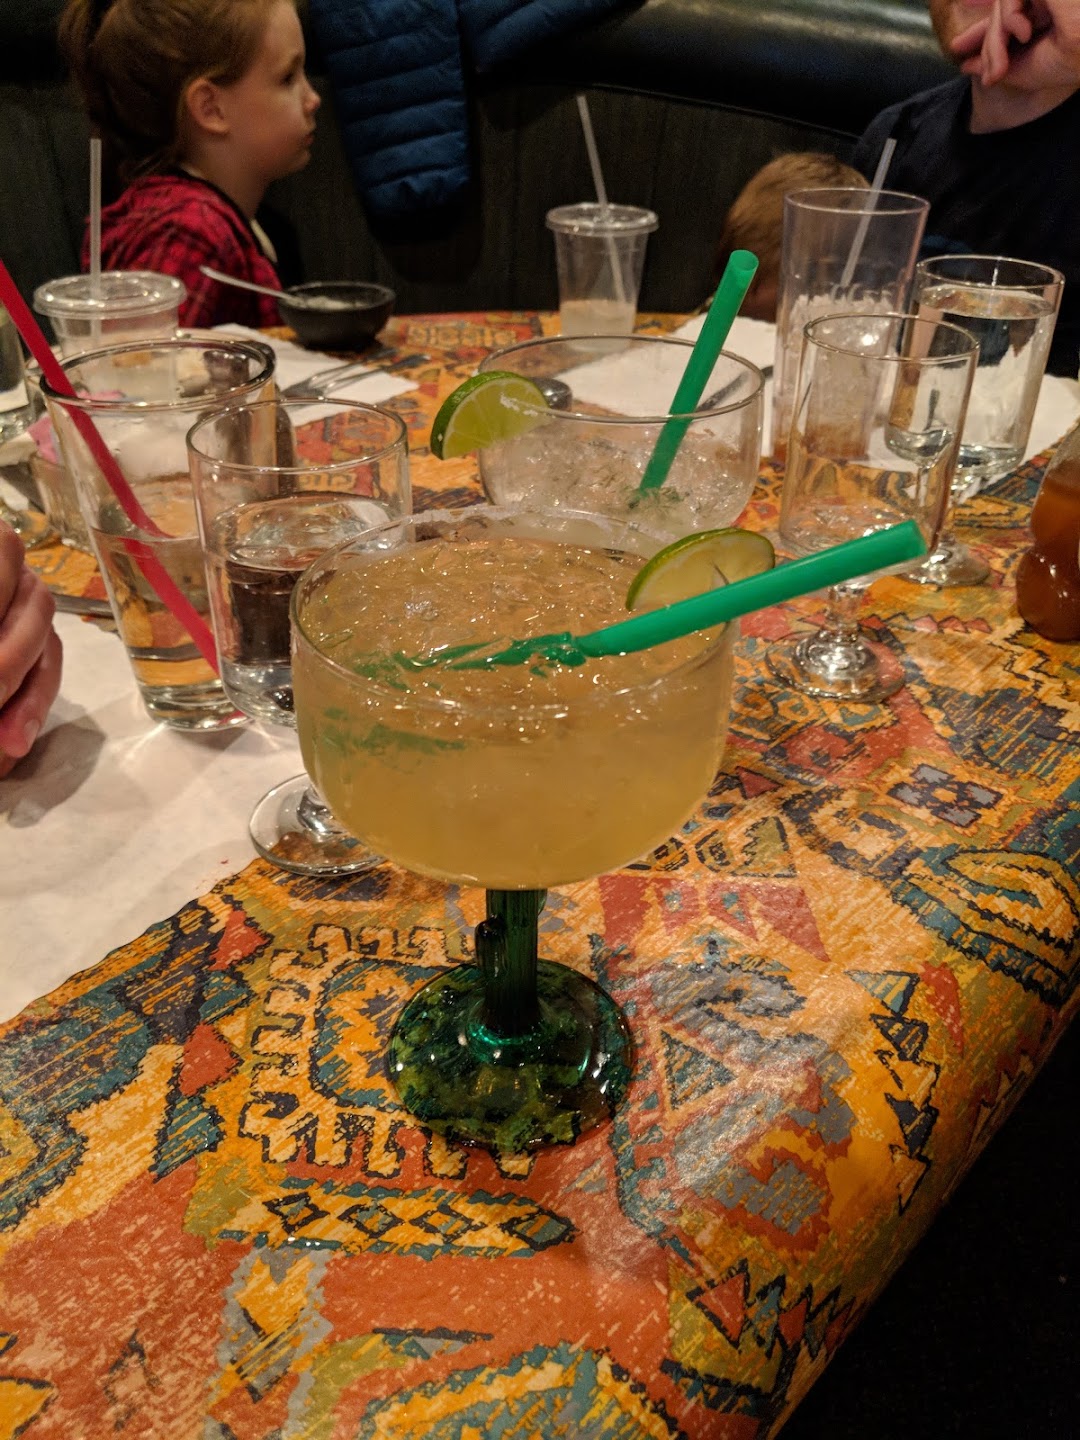 Las Margaritas